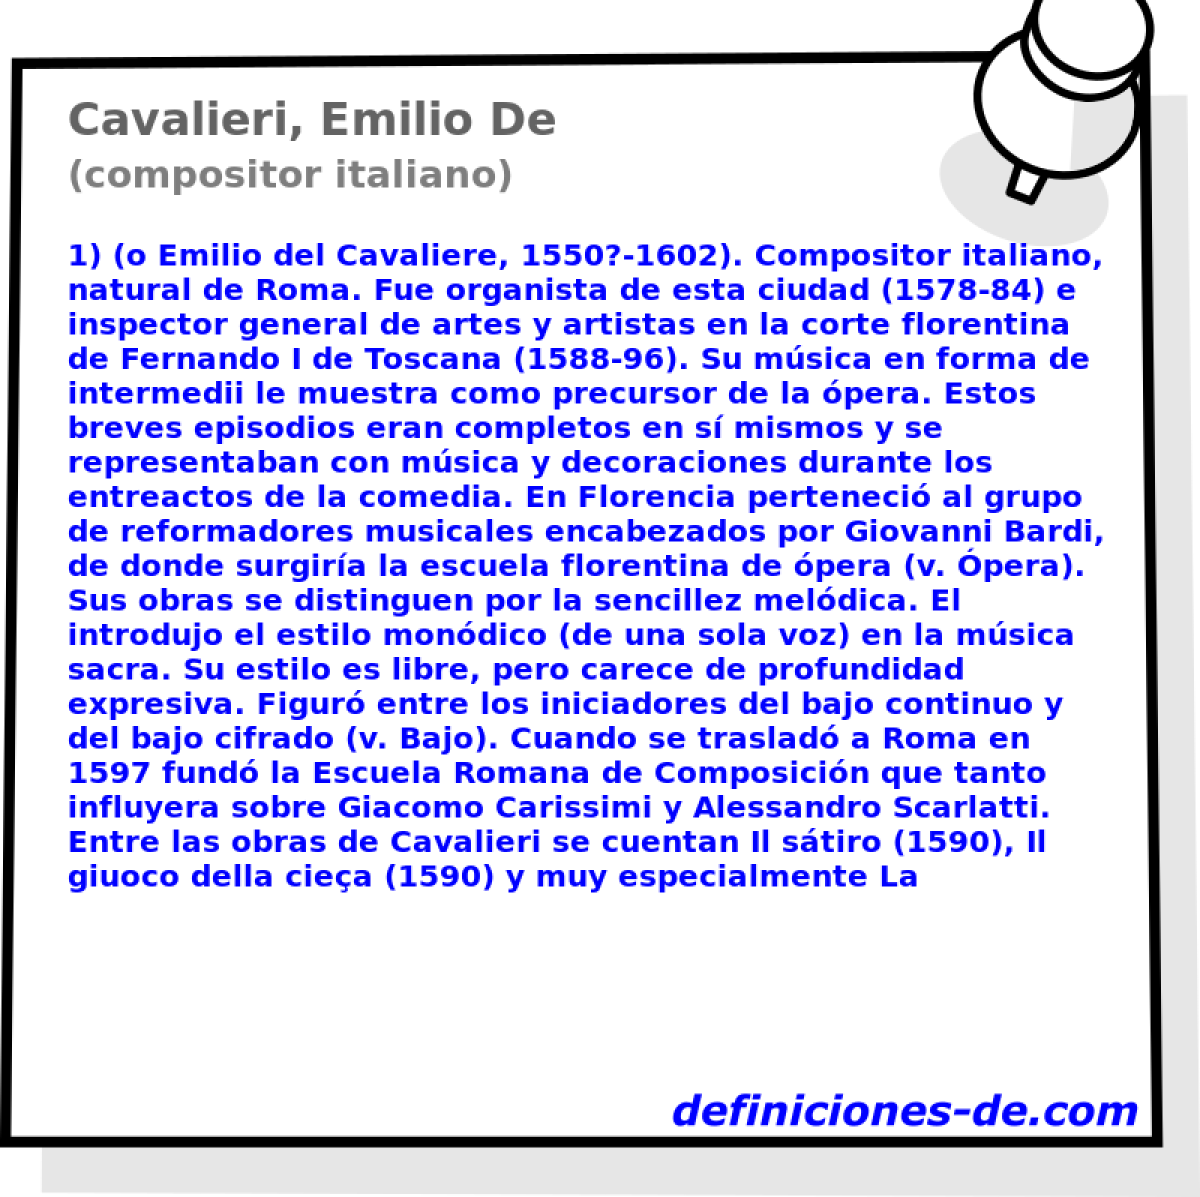 Cavalieri, Emilio De (compositor italiano)